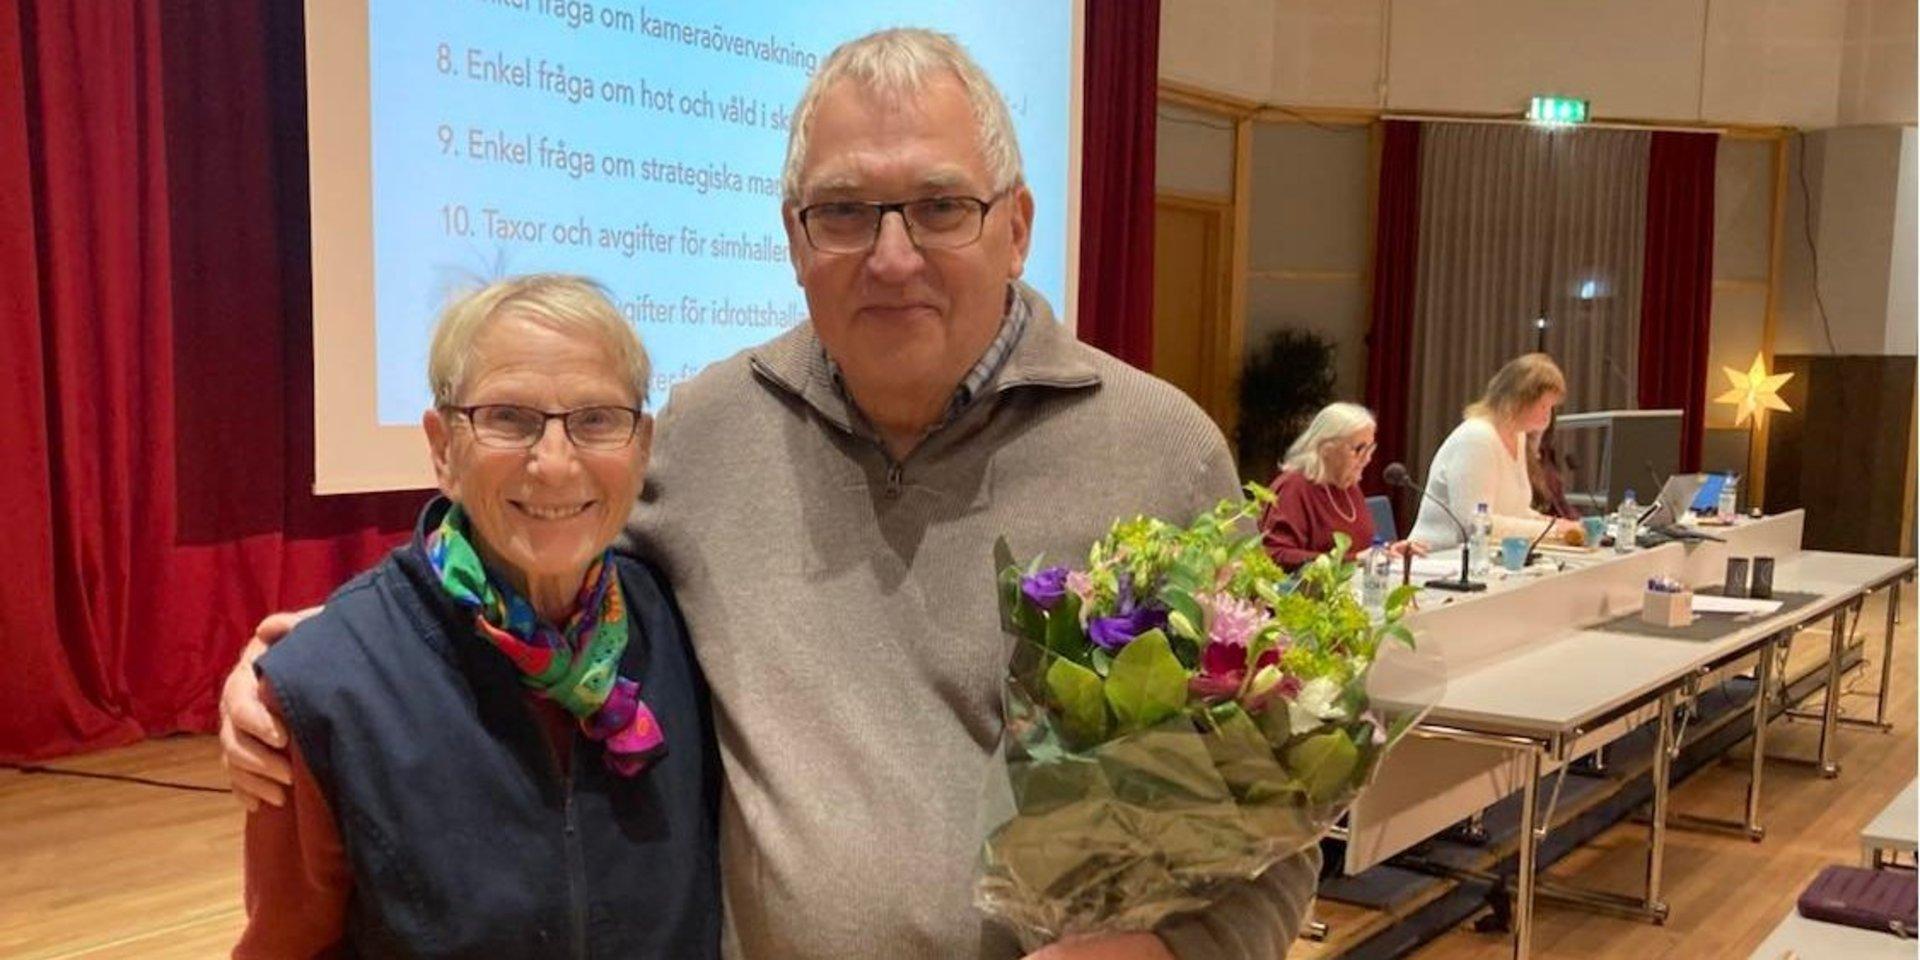 Irene Nilsson och Daniel Lindgren är sekreterare respektive ordförande i Stenunge Boulesällskap. Under torsdagskvällen fick de i samband med kommunfullmäktiges sammanträde ta emot priset som Årets förening 2021.